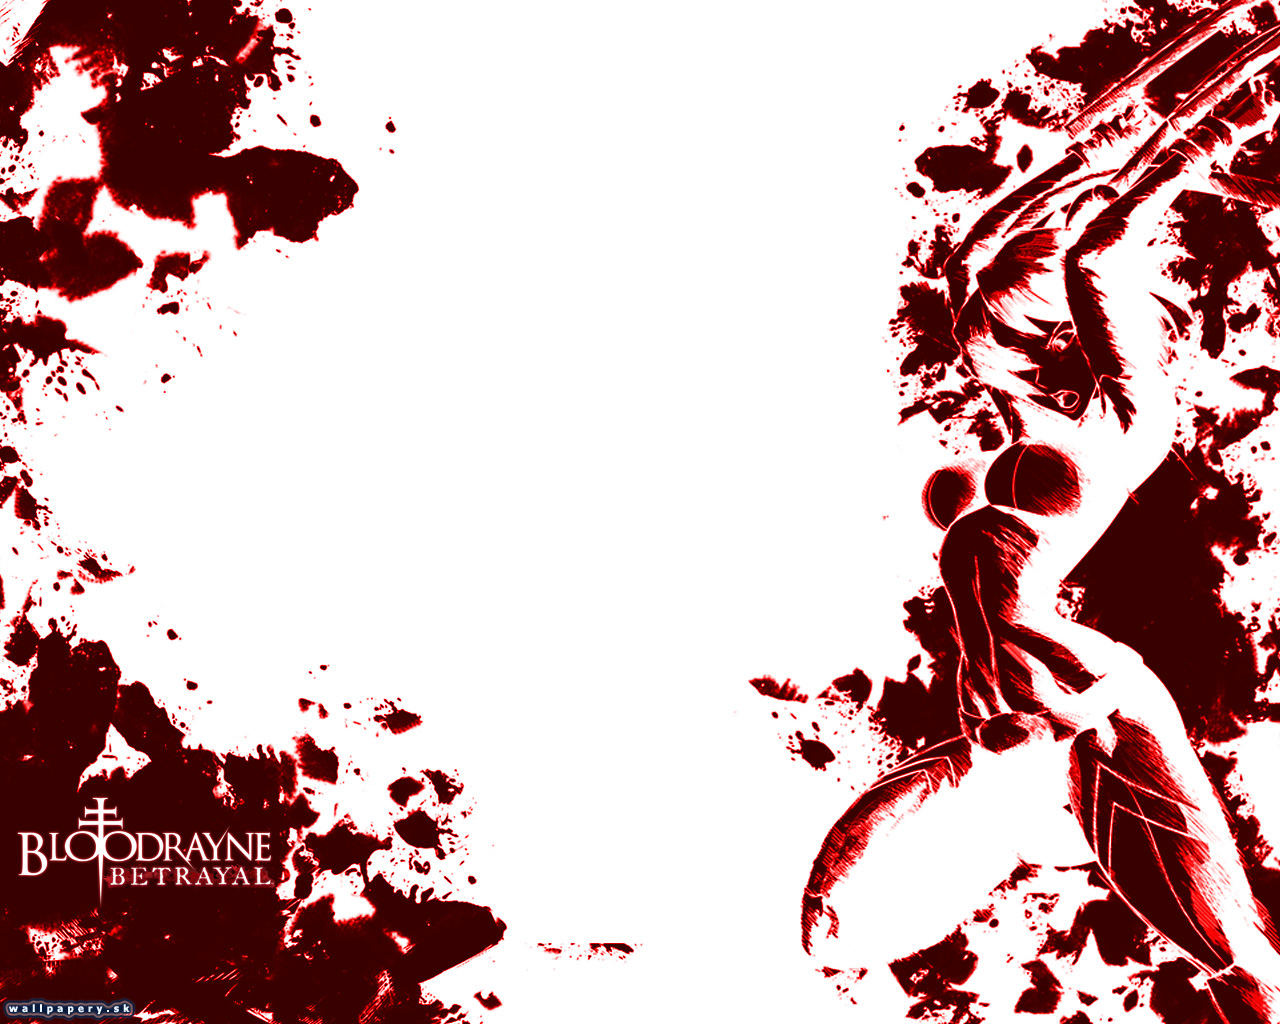 BloodRayne: Betrayal - wallpaper 5